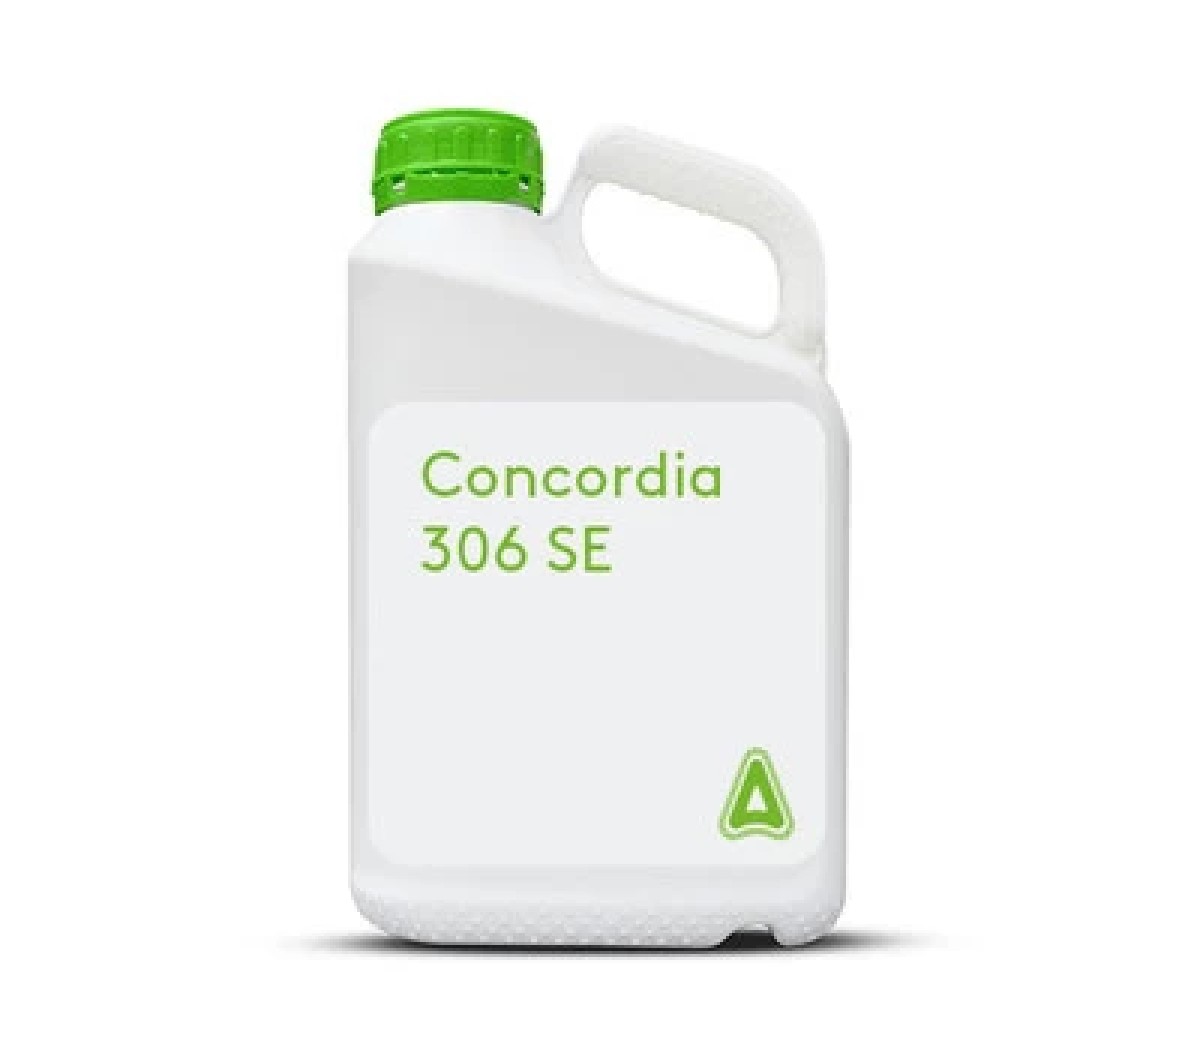 Concordia 306 SE